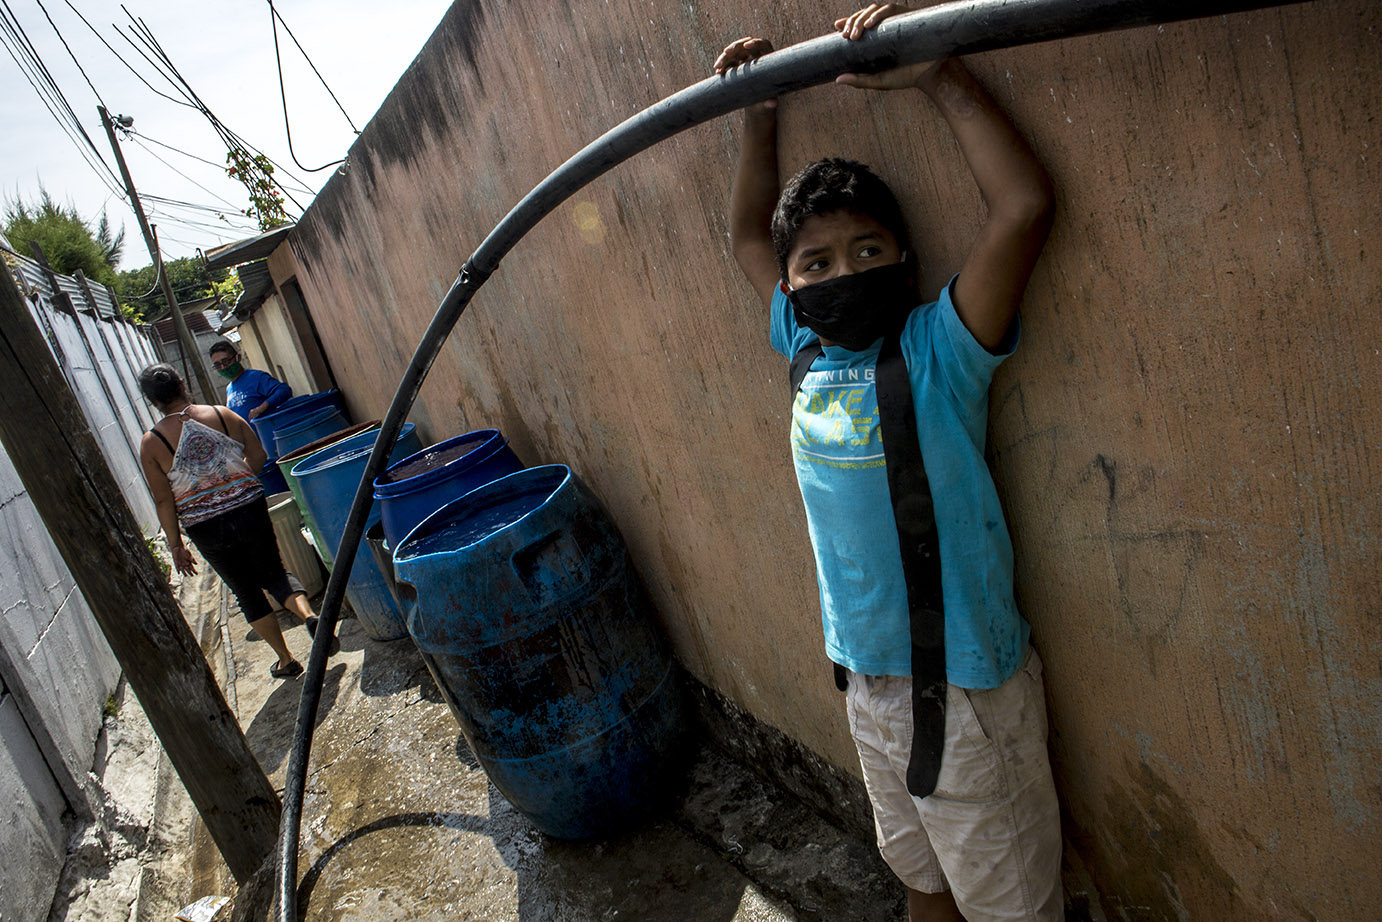 Daniel López, 12, sujeta la manguera que trae agua a los toneles frente de su casa, en la colonia Candelaria, zona 18 capitalina, en mayo 2020, durante una distribución de agua por parte de Empagua. Simone Dalmasso